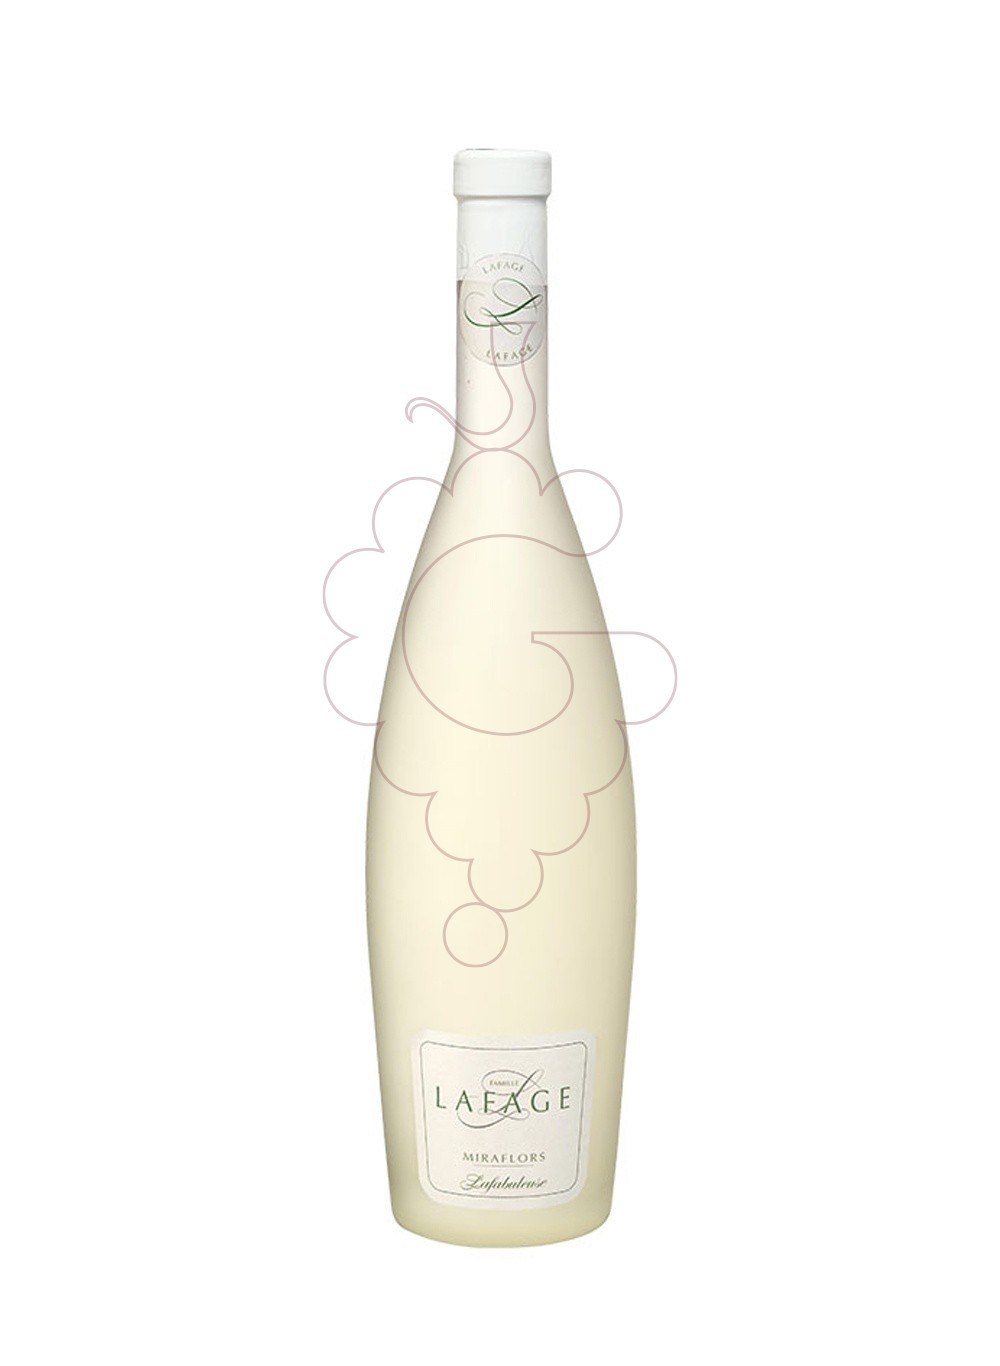 Photo Lafage Miraflors Lafabuleuse  white wine